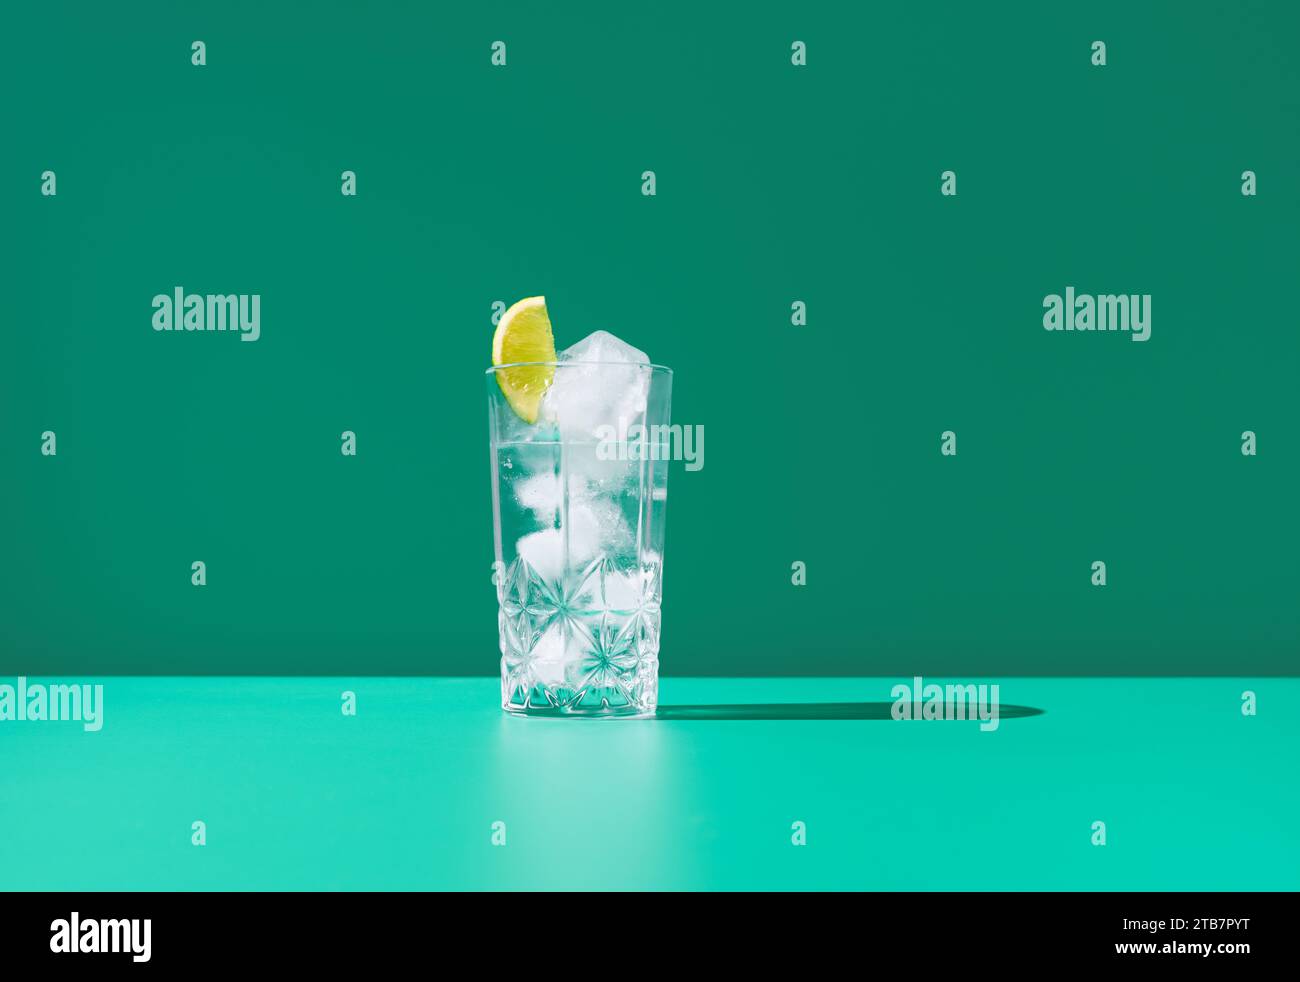 Un verre clair plein de gin tonic et recouvert d'une tranche de citron vert se trouve sur un fond vert vibrant, créant un visuel frais et frais. Banque D'Images